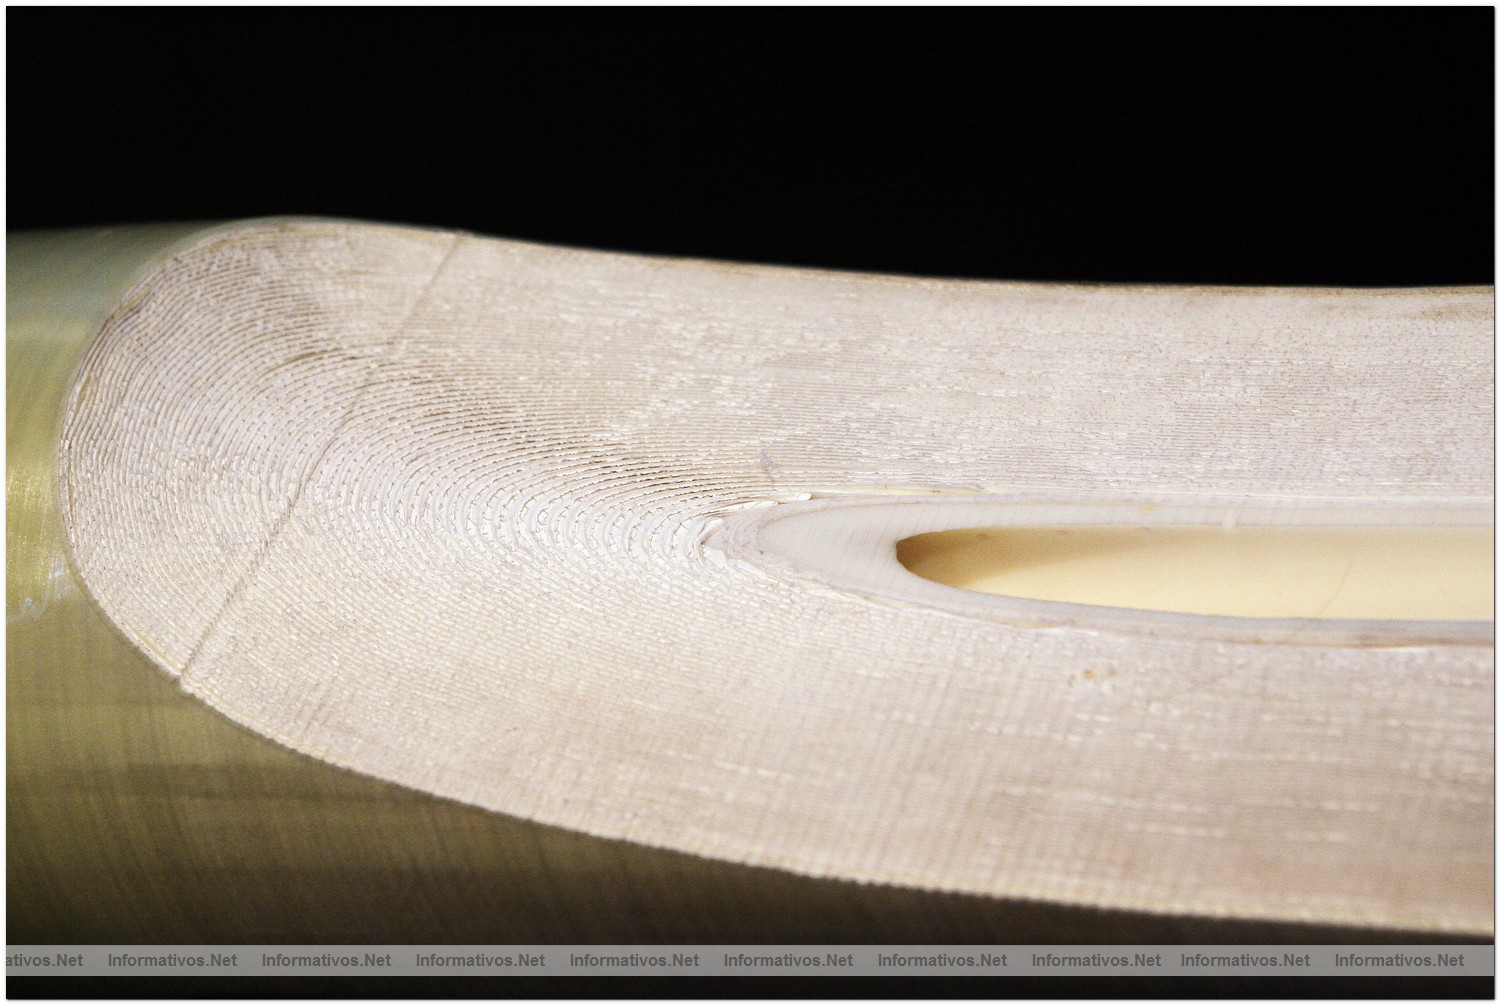 Osmosis inversa: La mayor parte del 'trabajo' de una depuradora son los preparativos para limpiar el agua de mar de impurezas y hacerla pasar por este último "filtro". Una finísima capa de poliamida, extendida como si fuera un barniz sobre una capa soporte, constituye la última barrera por la que pasa el agua. En esa membrana, del grosor de una hoja de papel, sólo actúa para producir la desalación la capa activa de poliamida. 

Las hojas de membranas enrolladas en espiral sobre un tubo perforado y en forma de sobres cerrados por tres lados y abiertos por uno, conectados por el tubo perforado central que recoge el agua dulce forman el paquete básico de membranas que constituyen la desaladora.

En un tubo de presión se alojan siete de estos paquetes que se unen entre si por conexiones que dan continuidad a los dos flujos en que se separa el agua de mar: el agua dulce, que circula por el tubo central, y el agua salada que se va concentrando conforme avanza por el interior del tubo de presión. La capa activa de todas las membranas de la desaladora de Barcelona pesa 1.500 Kg  y toda la complejidad de la instalación tiene como fin preparar el agua del mar para que pase por esta finísima capa de membranas sin dañarla.